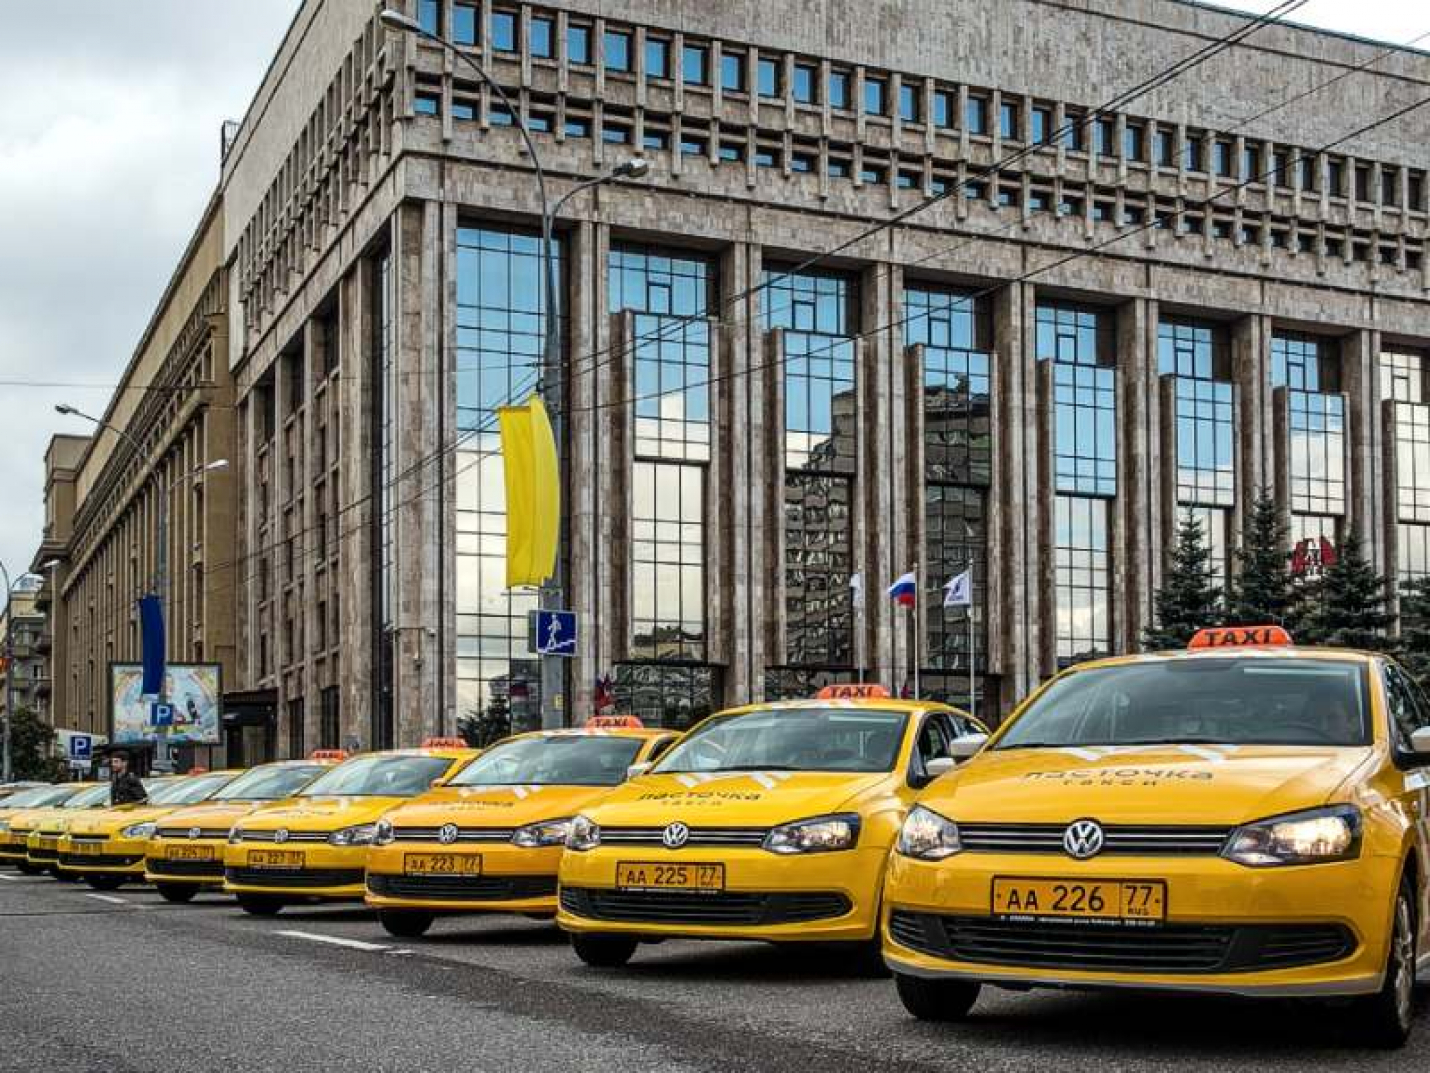 Таксист из Москвы спас потерявшегося ребёнка